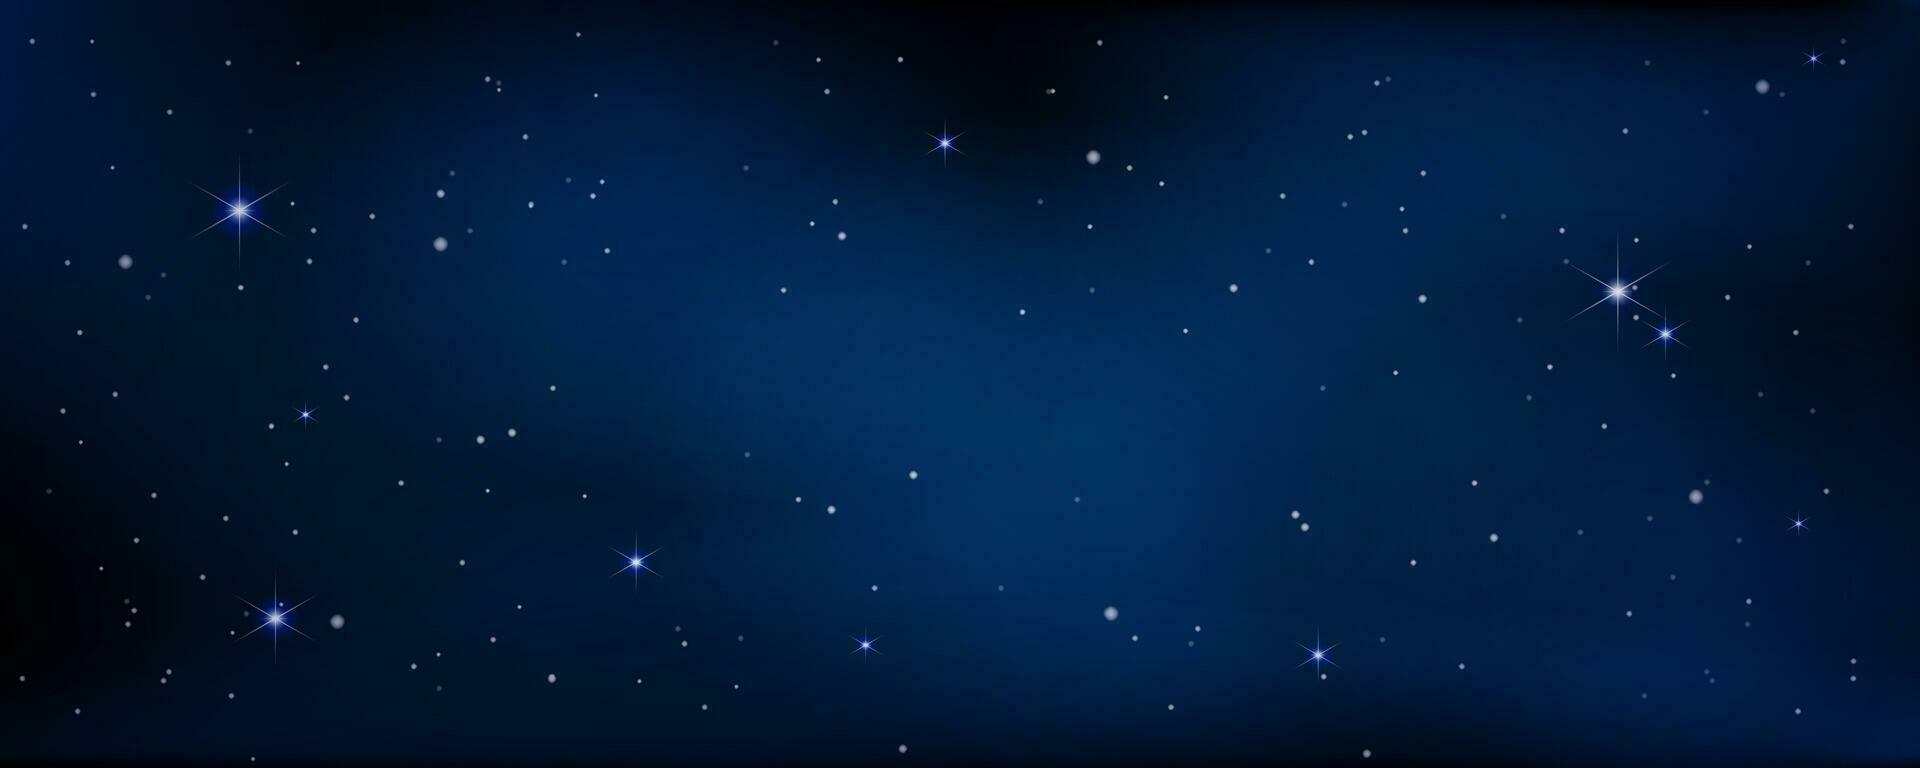 begrepp av webb baner. magi Färg galax. horisontell Plats bakgrund med realistisk nebulosa, stardust och lysande stjärnor. oändlig universum och starry natt himmel vektor